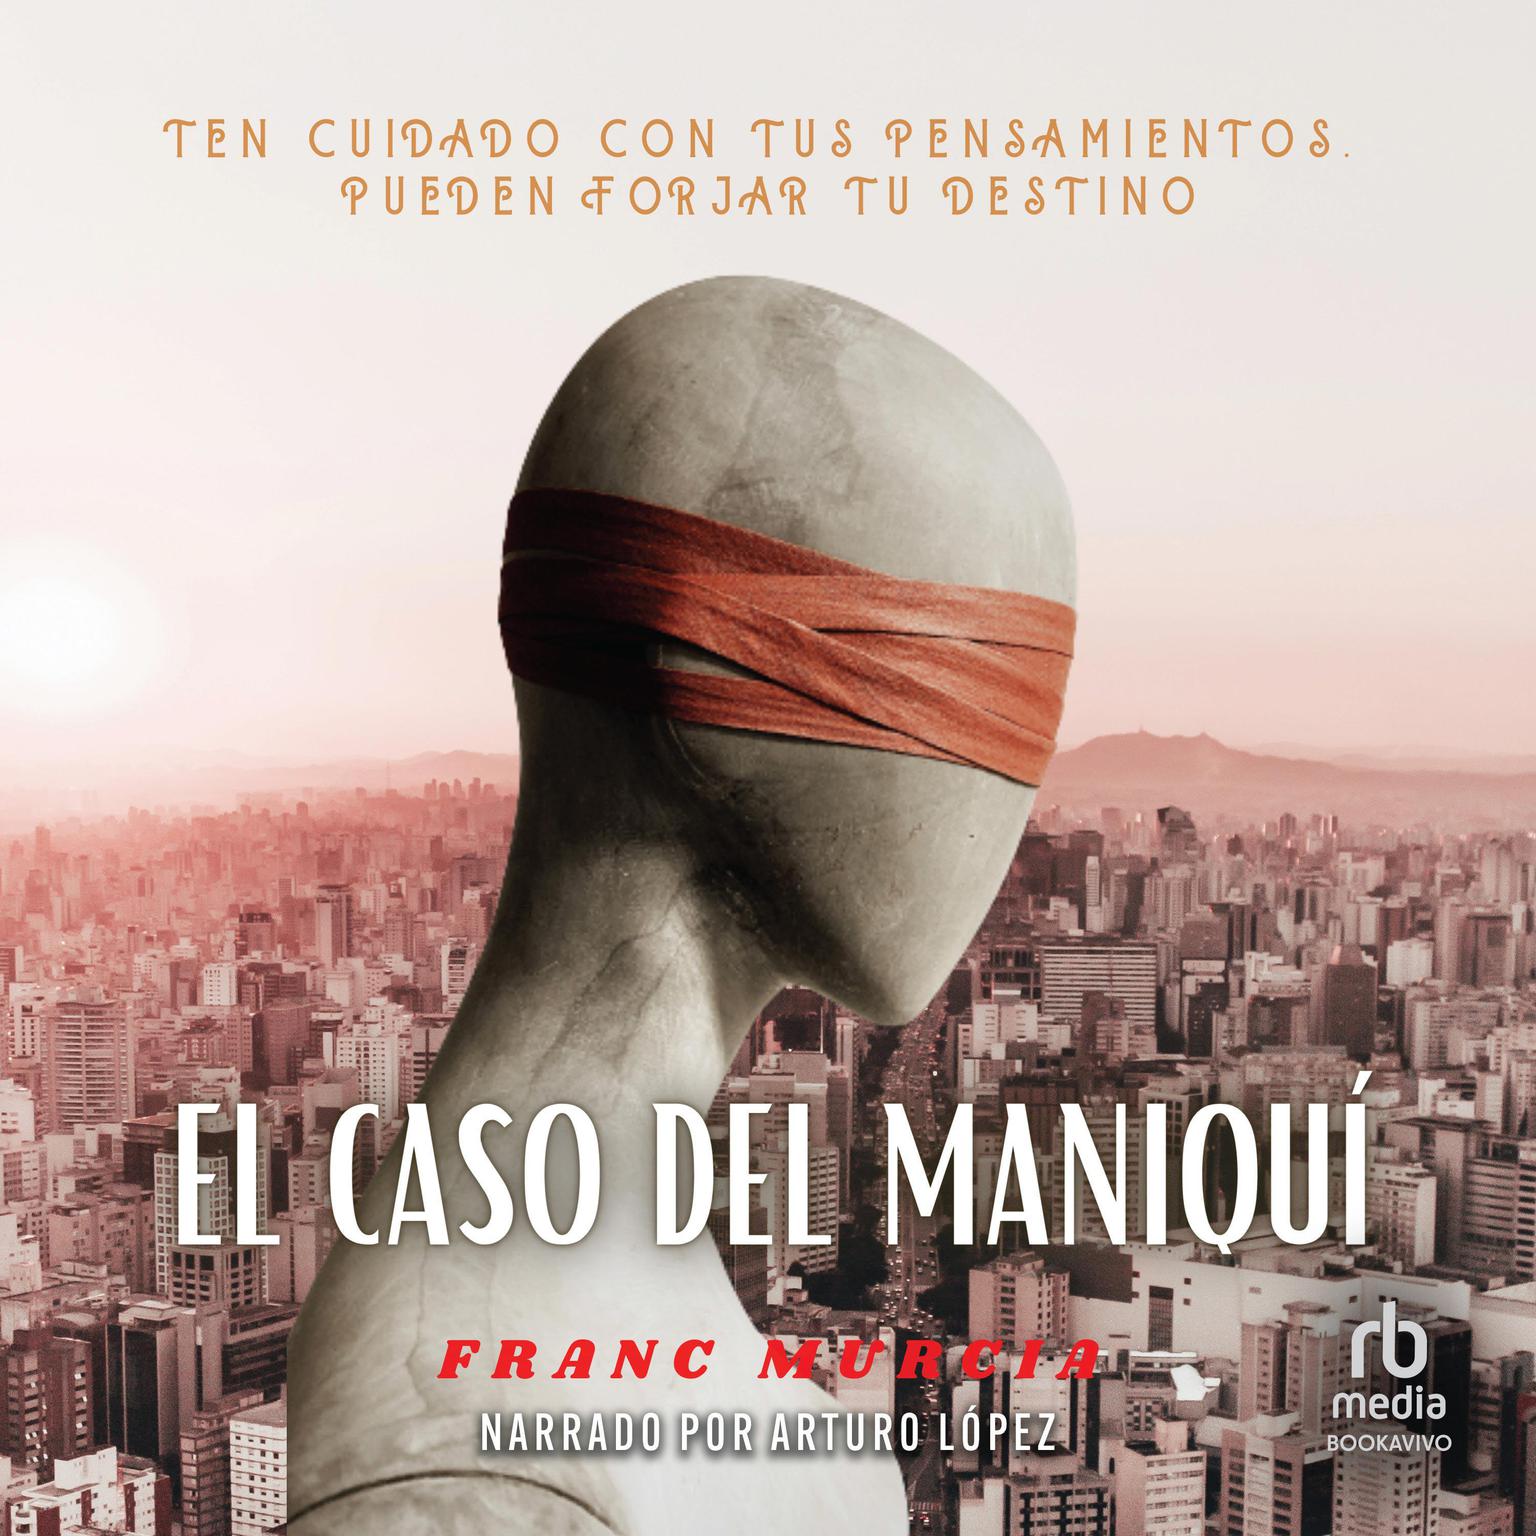 El caso del maniquí Audiobook, by Franc Murcia